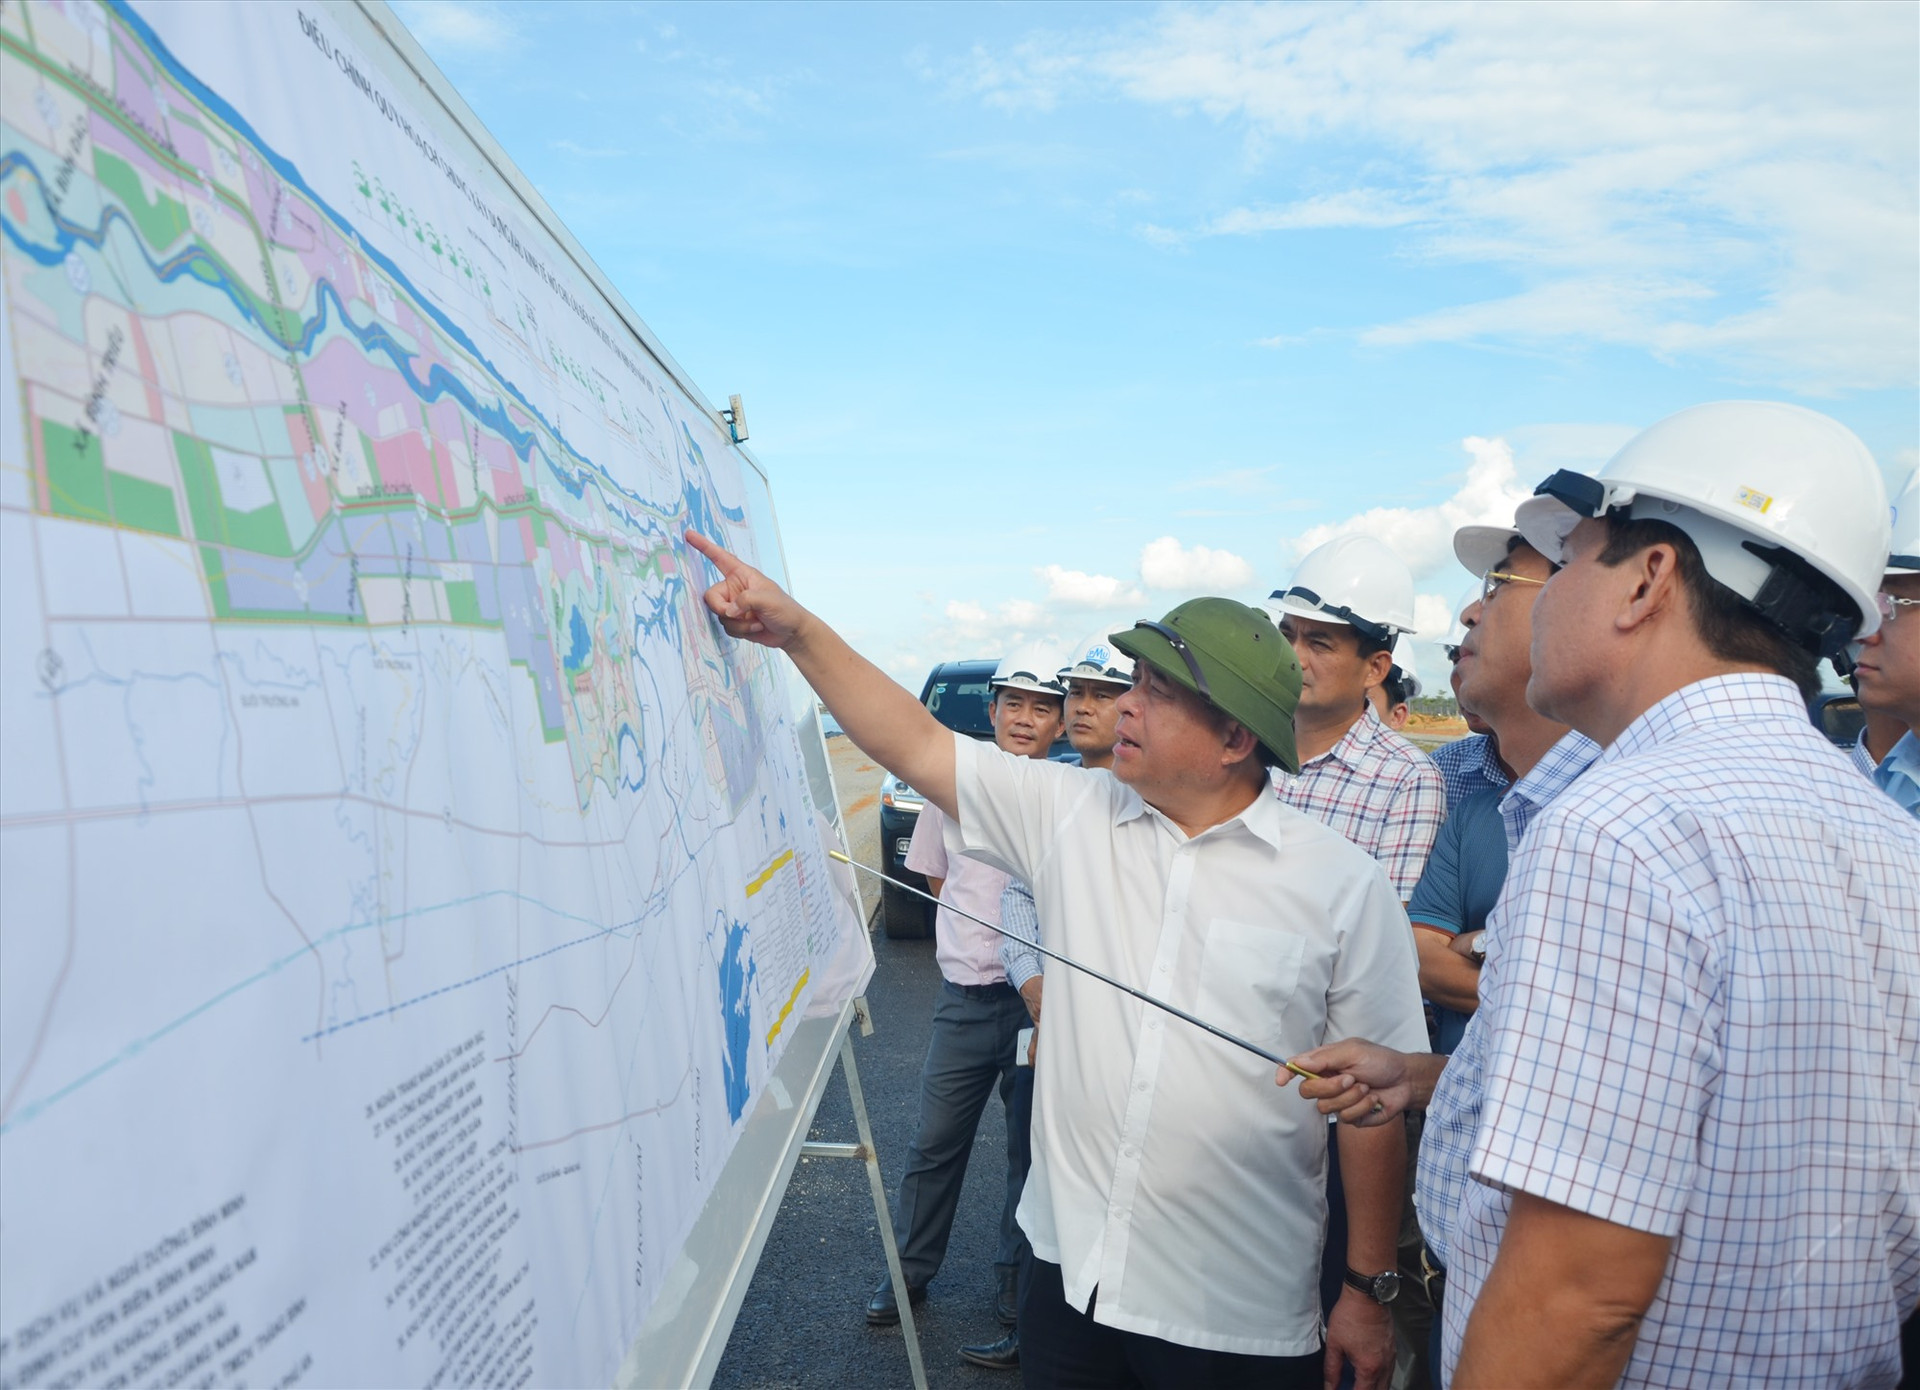 Bộ trưởng Bộ KH&ĐT Nguyễn Chí Dũng kiểm tra bản đồ điều chỉnh quy hoạch chung Khu kinh tế mở Chu Lai tại buổi đi thực tế chiều 4.7 tại đường 129 thuộc huyện Núi Thành. Ảnh: H.P